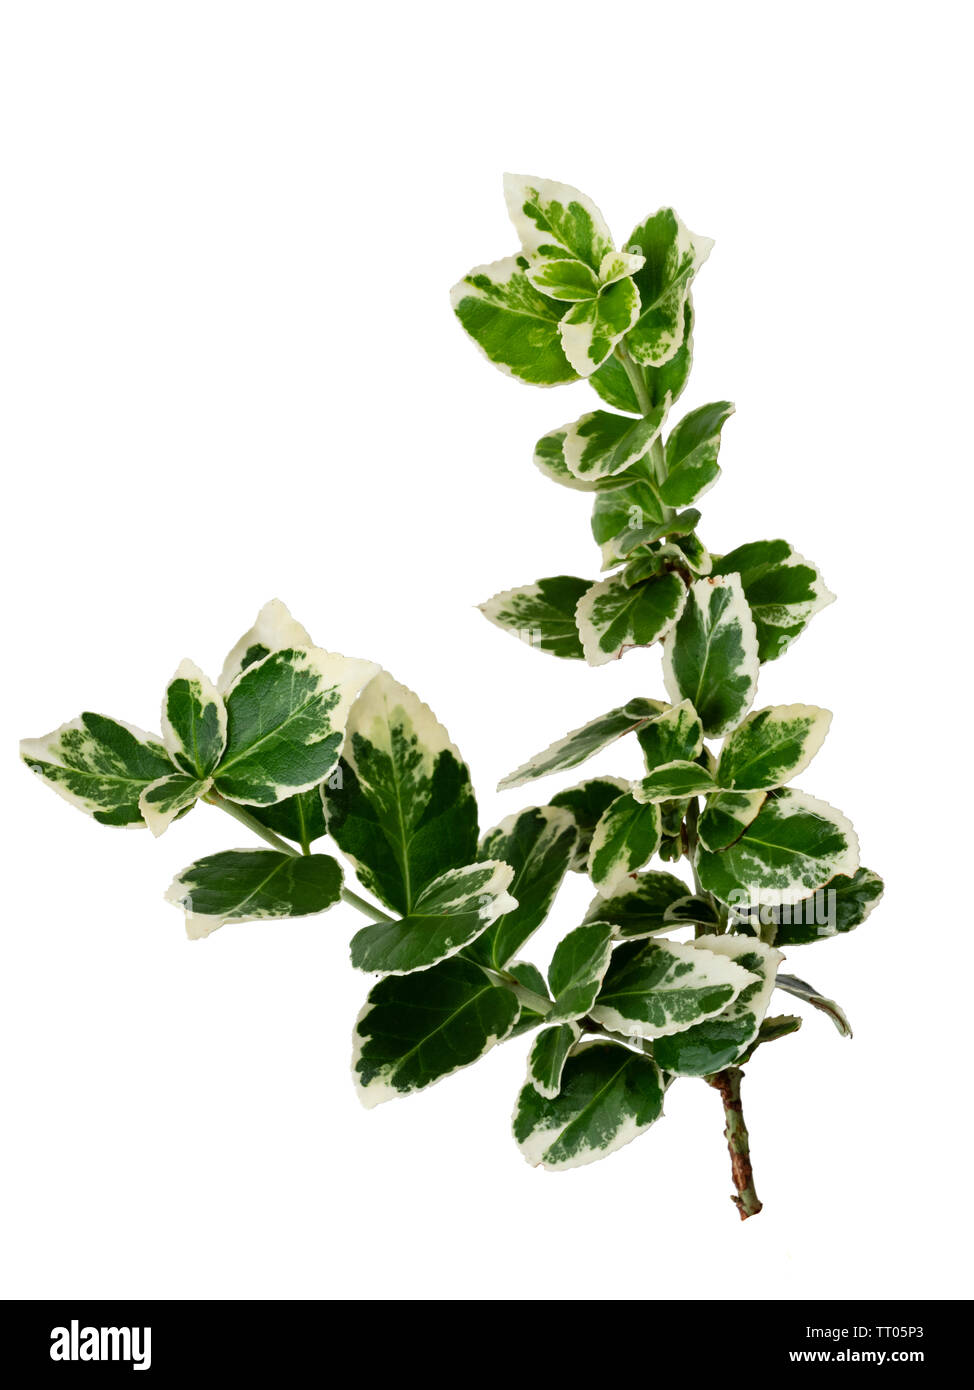 Bunte weiße und grüne Laub der Hardy Evergreen bittersüße Strauch, Euonymus undulata 'Emerald Gaiety', auf weissem isoliert Stockfoto